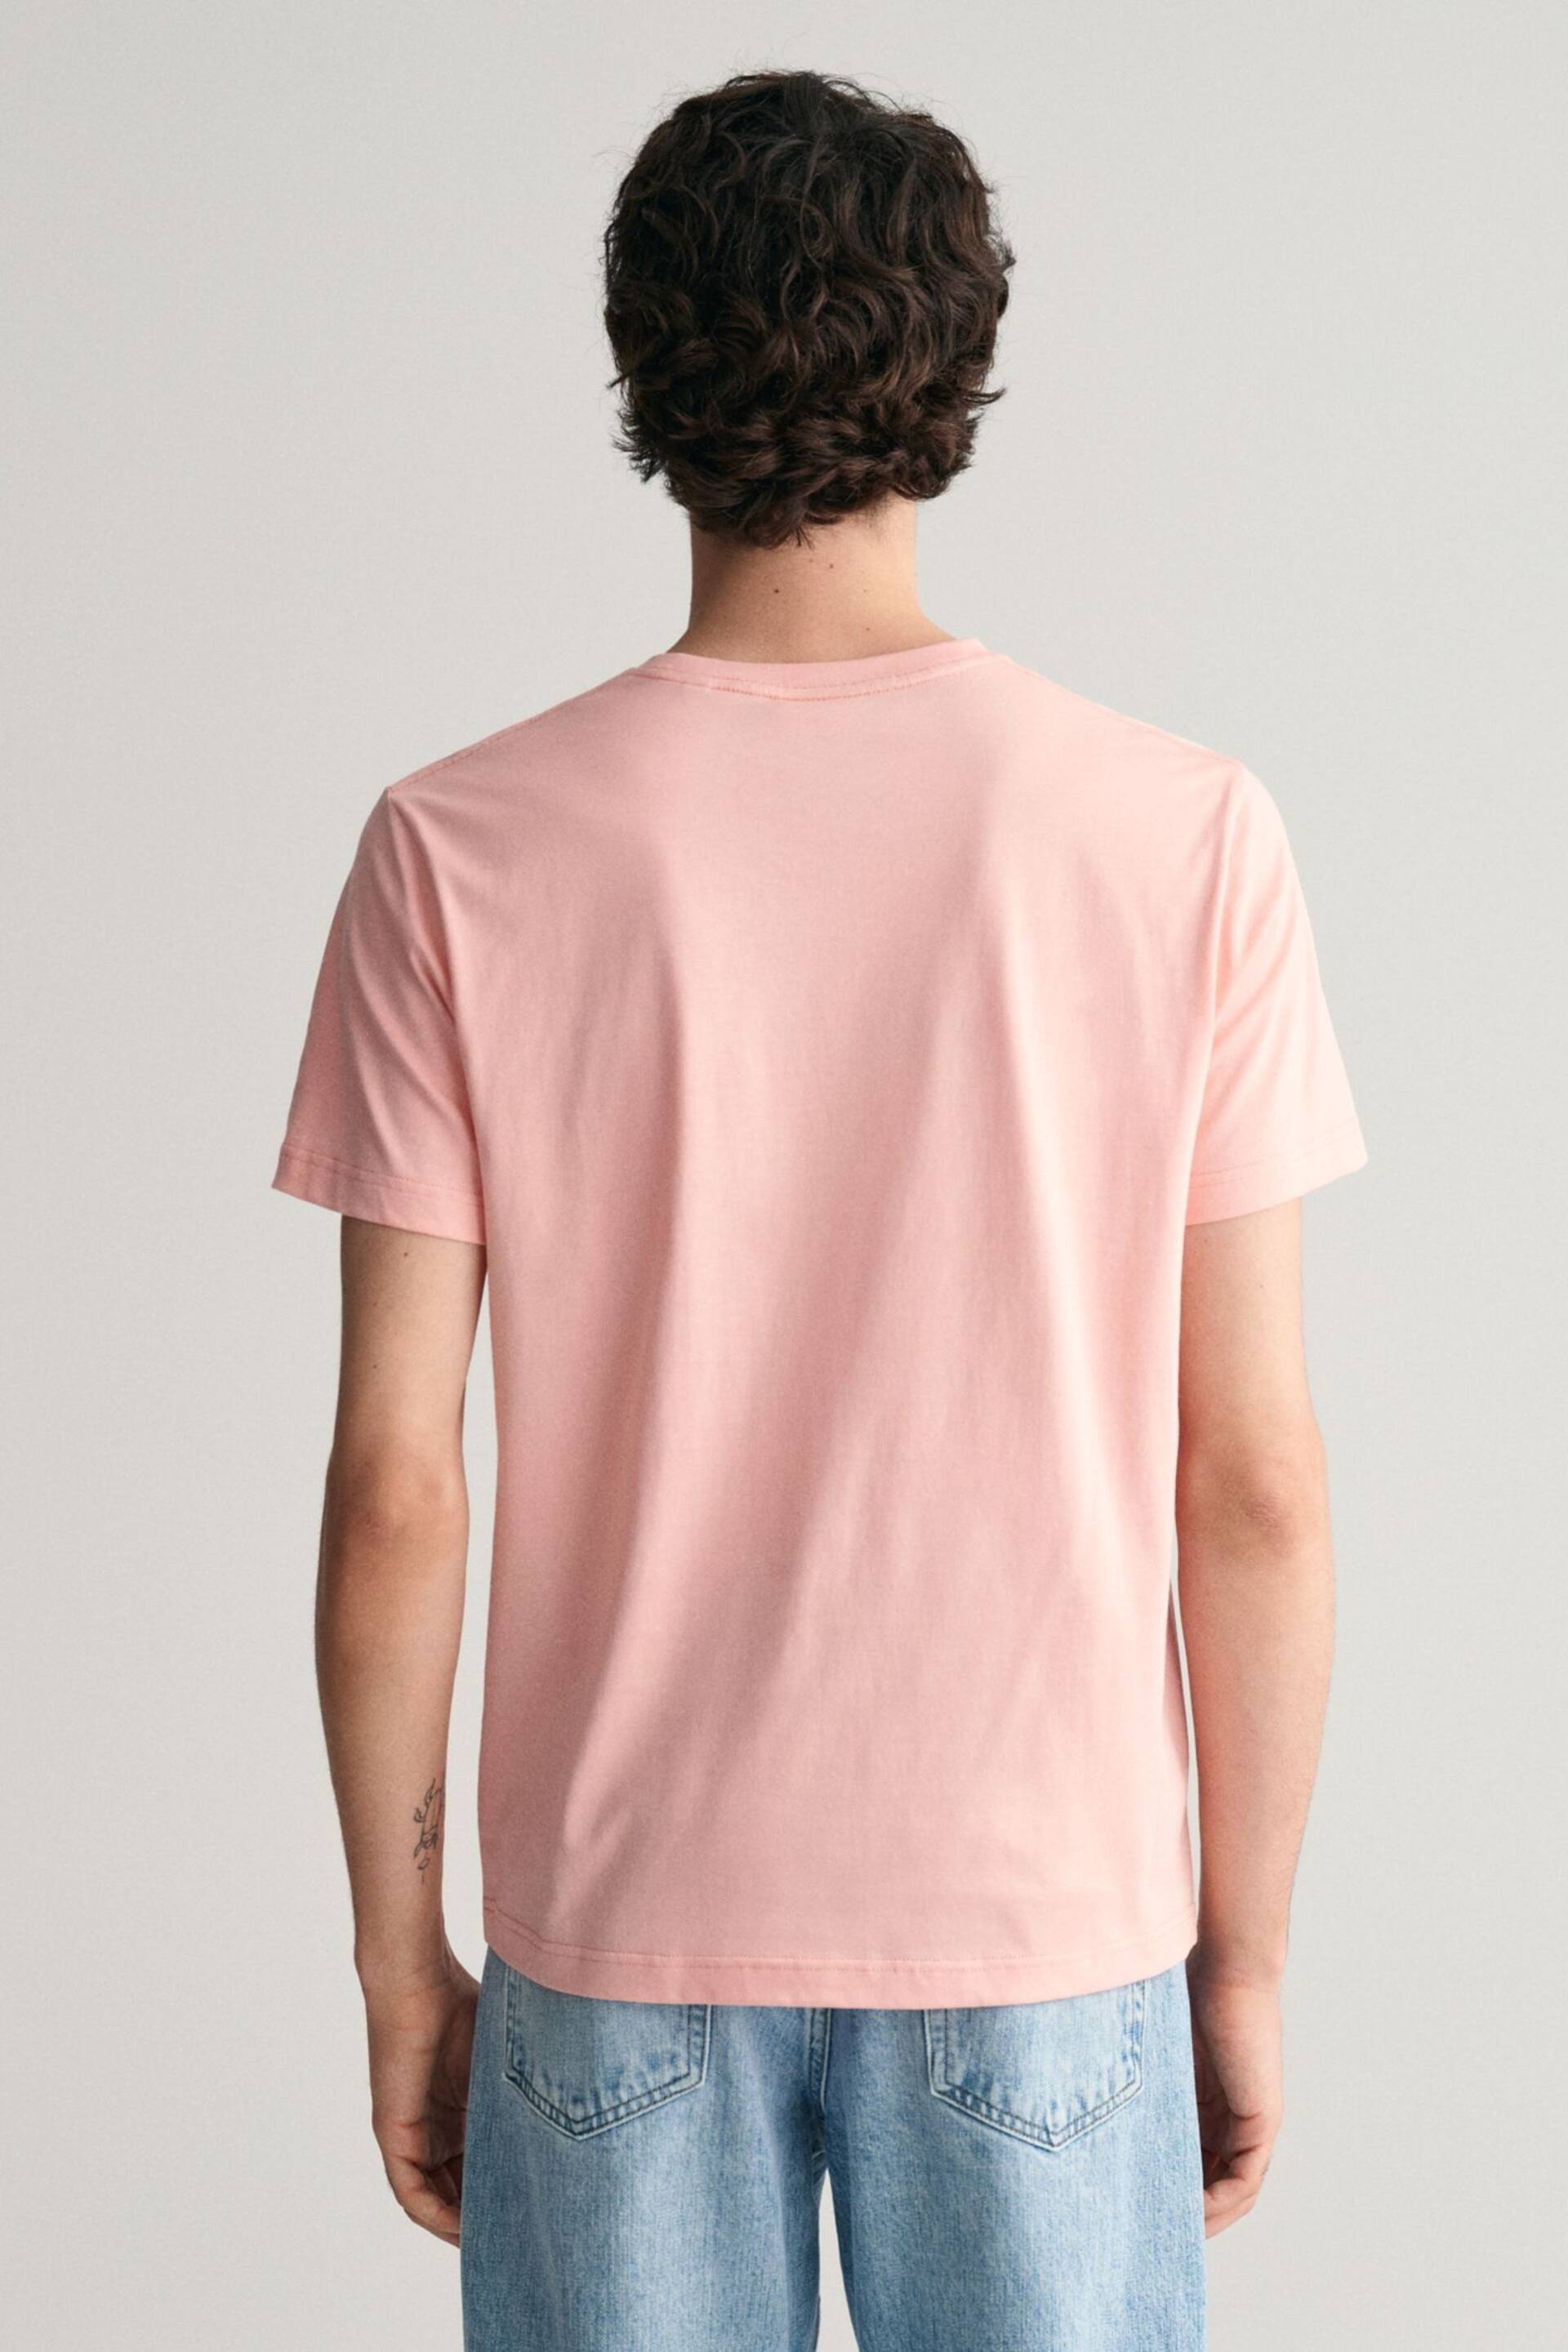 GANT Pink Shield Logo T-Shirt - Image 2 of 5